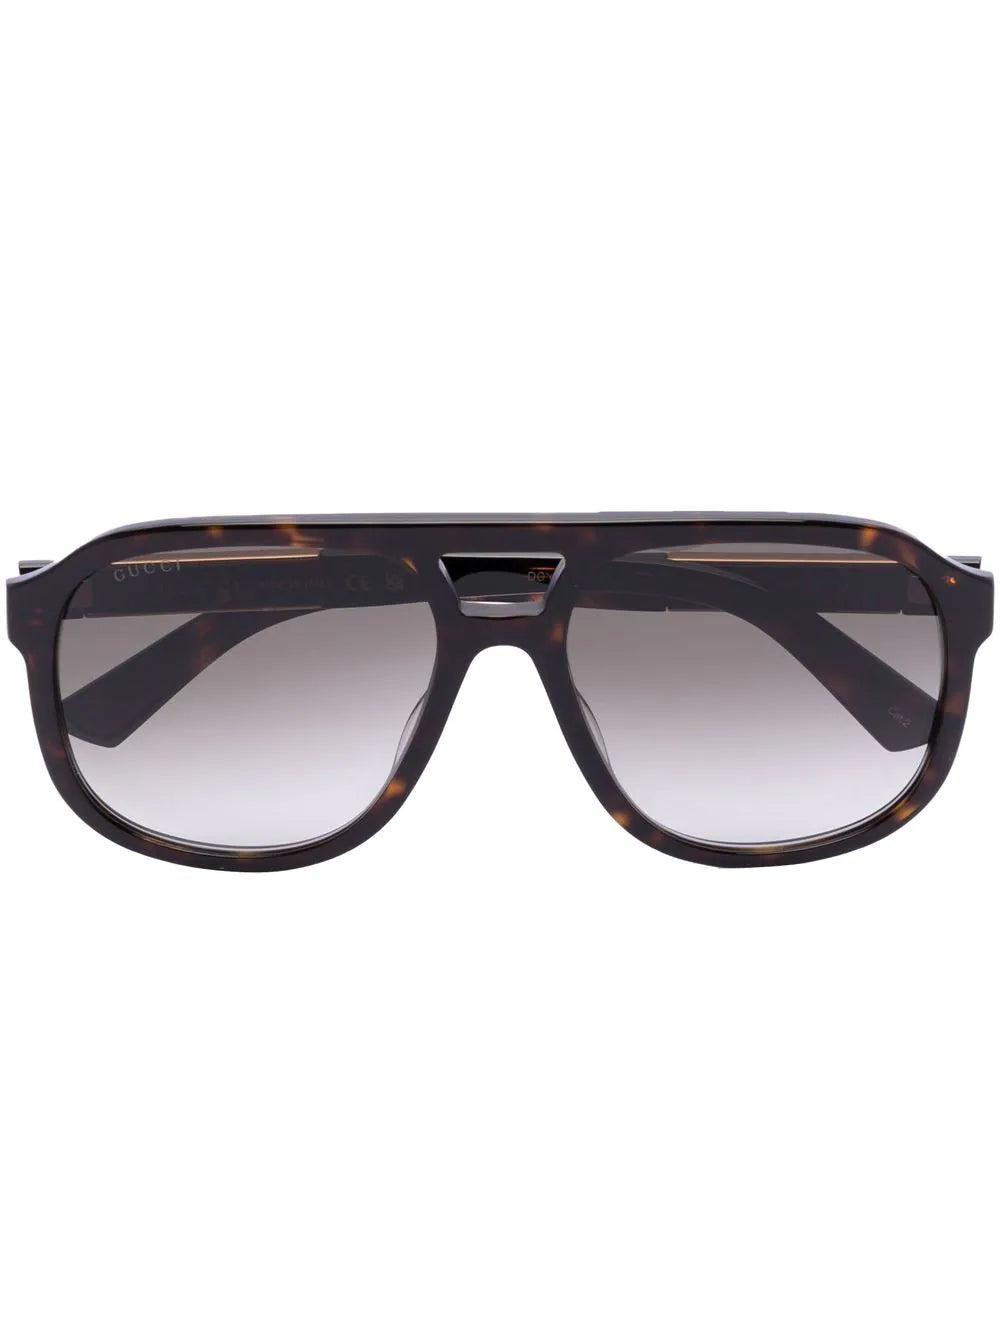 Gucci Aviator Tortoiseshell Sunglasses Havana GG1188S 003